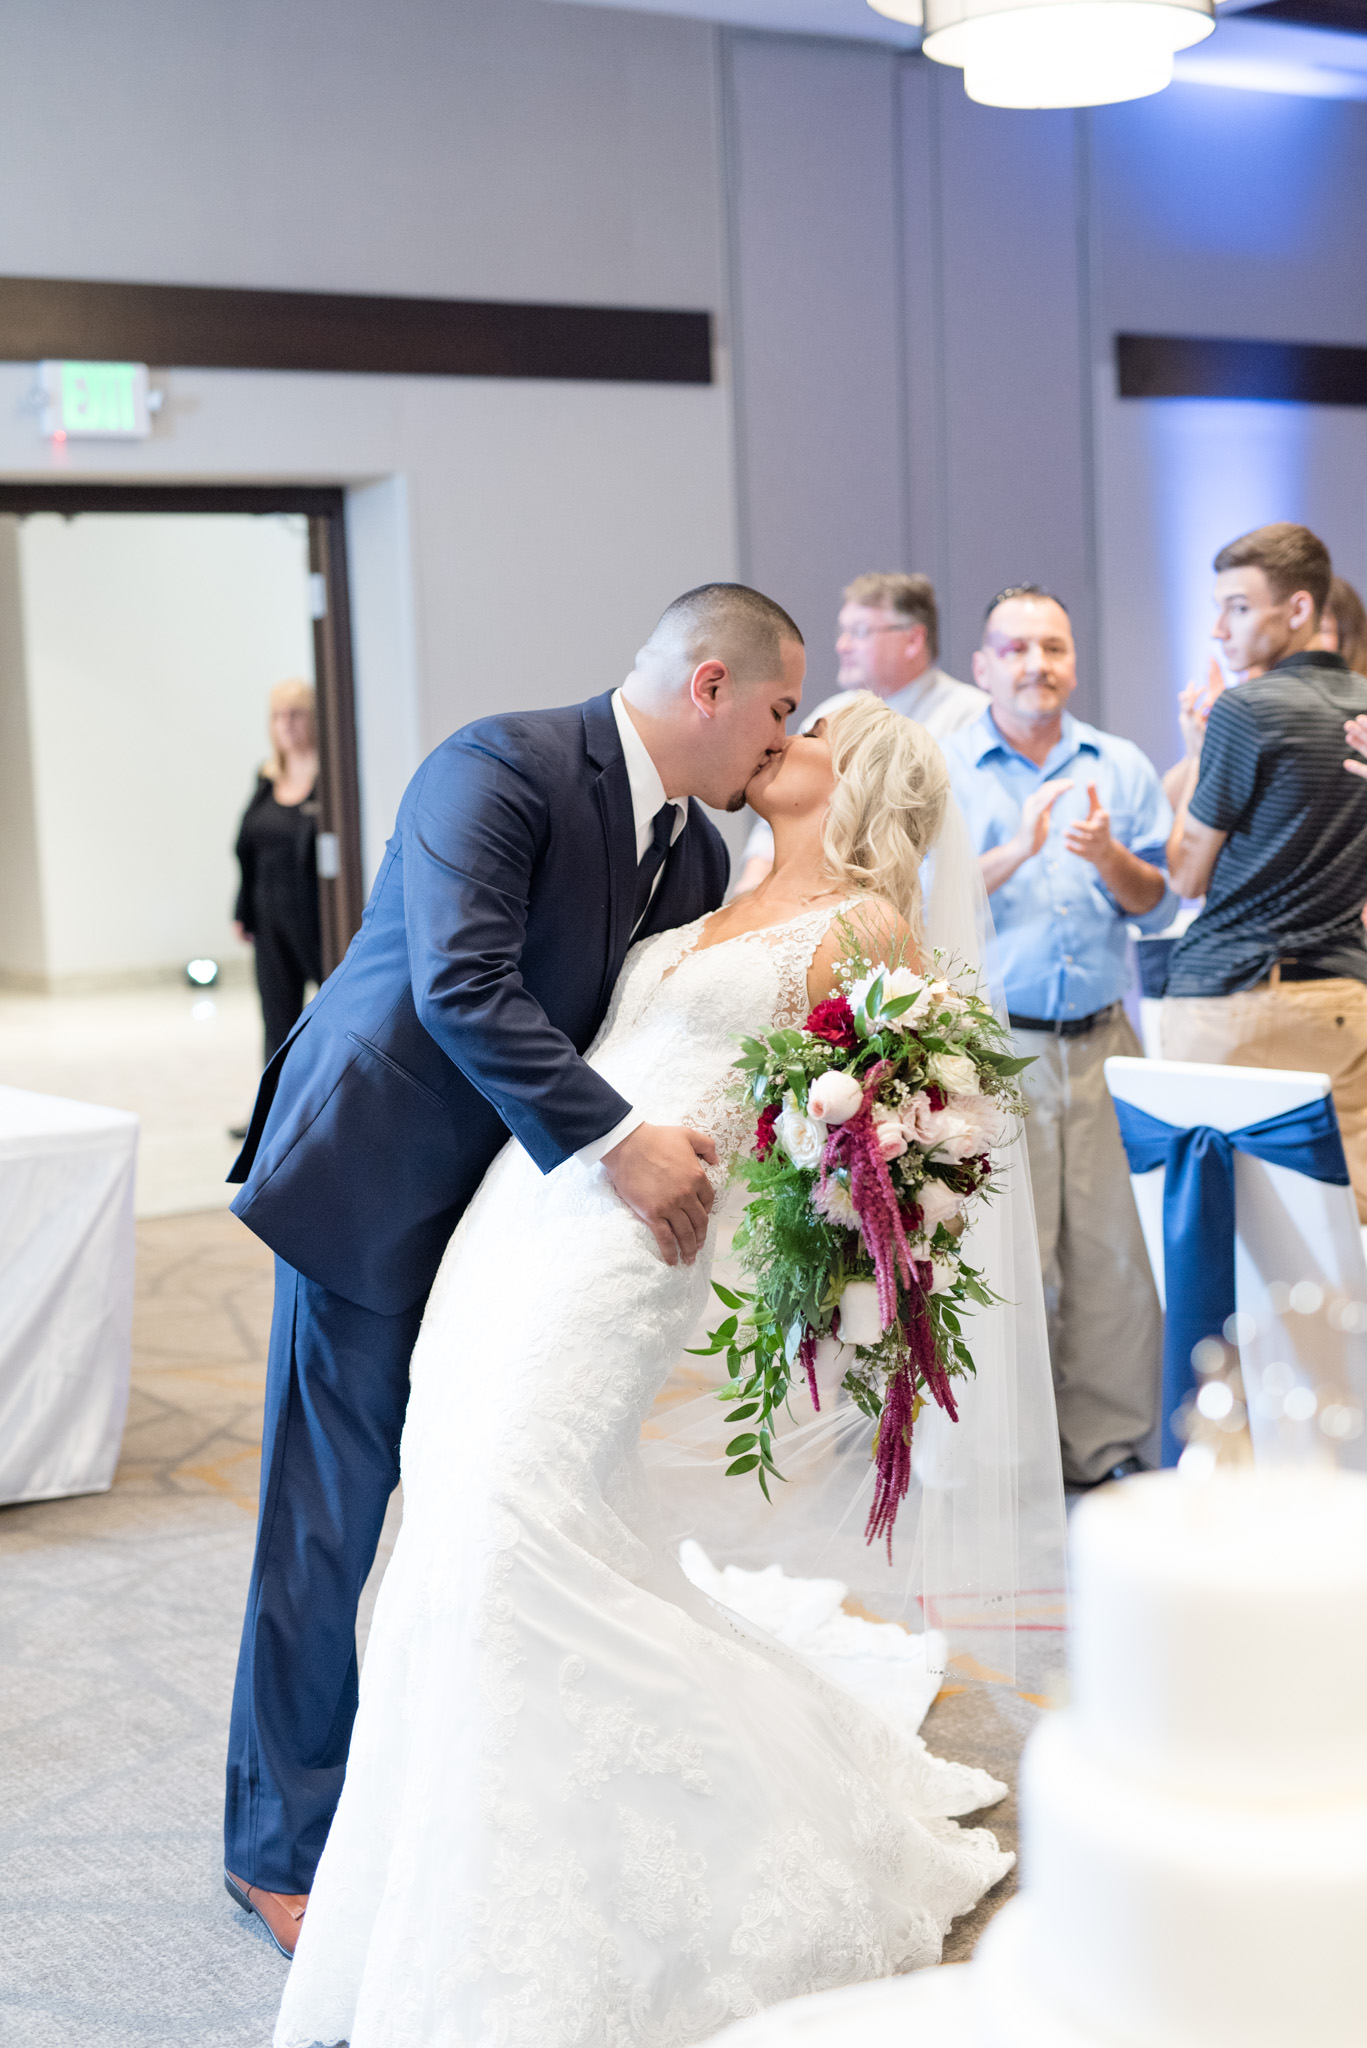 Groom dips bride at wedding reception.